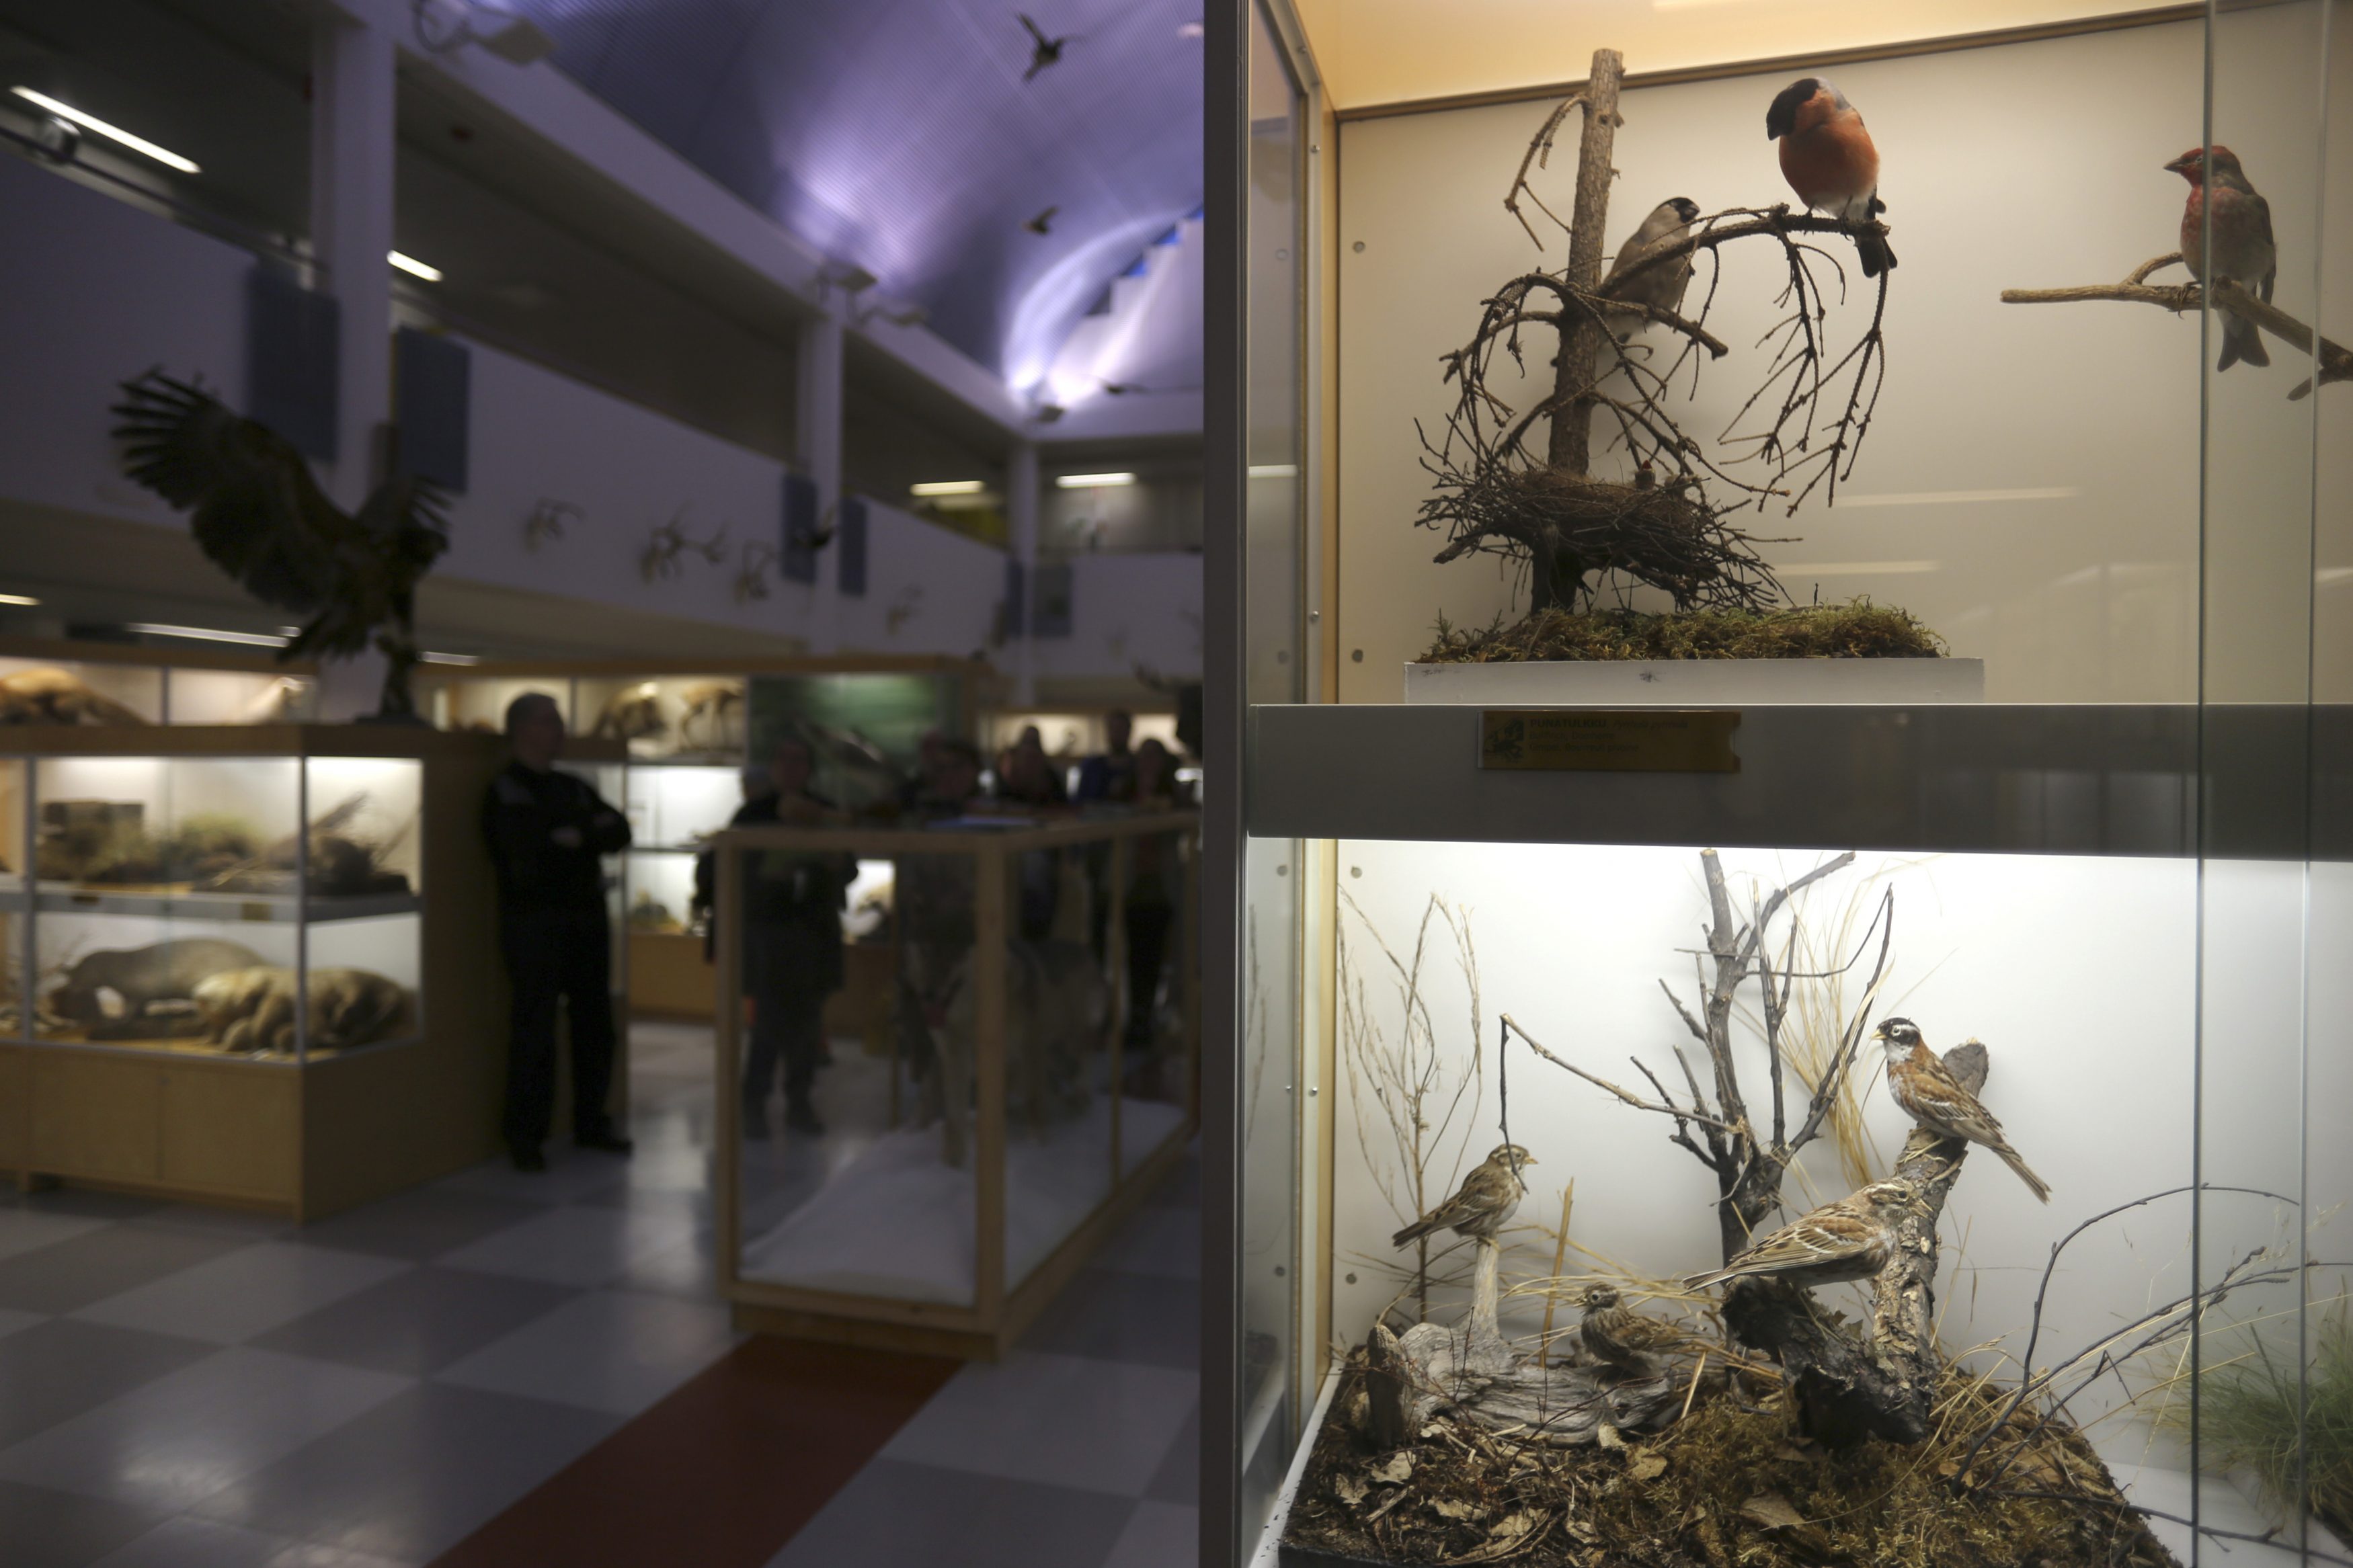 Oulun yliopiston eläinmuseon ovet suljettiin loppuvuonna 2017. Yleisönäyttelyssä oli esillä 1300 selkärankaista ja yli 3000 selkärangatonta Suomen eläinlajistolle tyypillistä eläintä. Esillä oli kuitenkin vain pieni murto-osa museon kokoelmista. Arkistokuva vuodelta 2017.